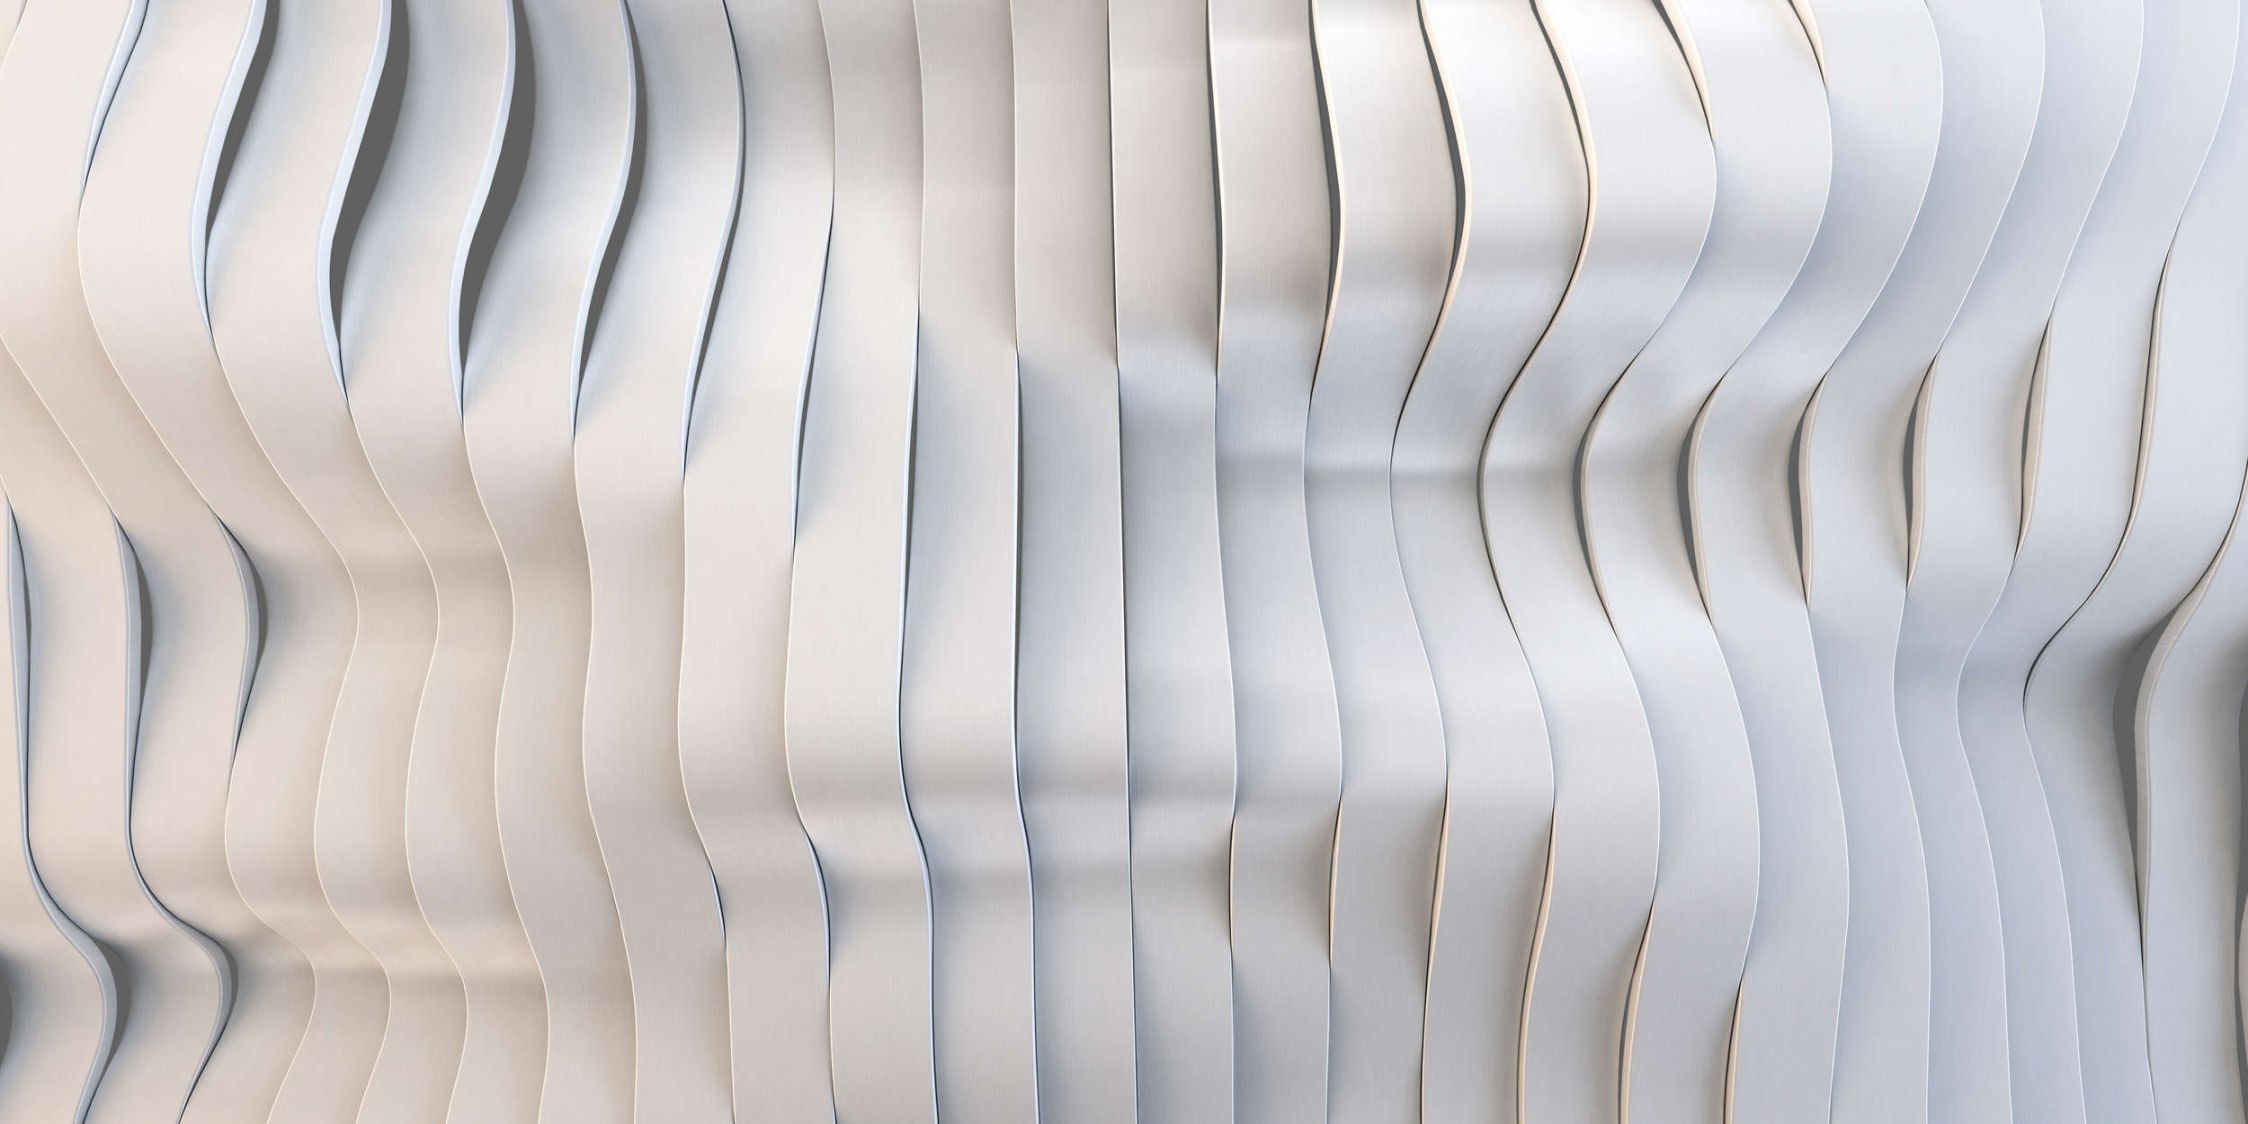             solaris 1 - Photo wallpaper in futuristic streamline design - Smooth, slightly shiny premium non-woven fabric
        